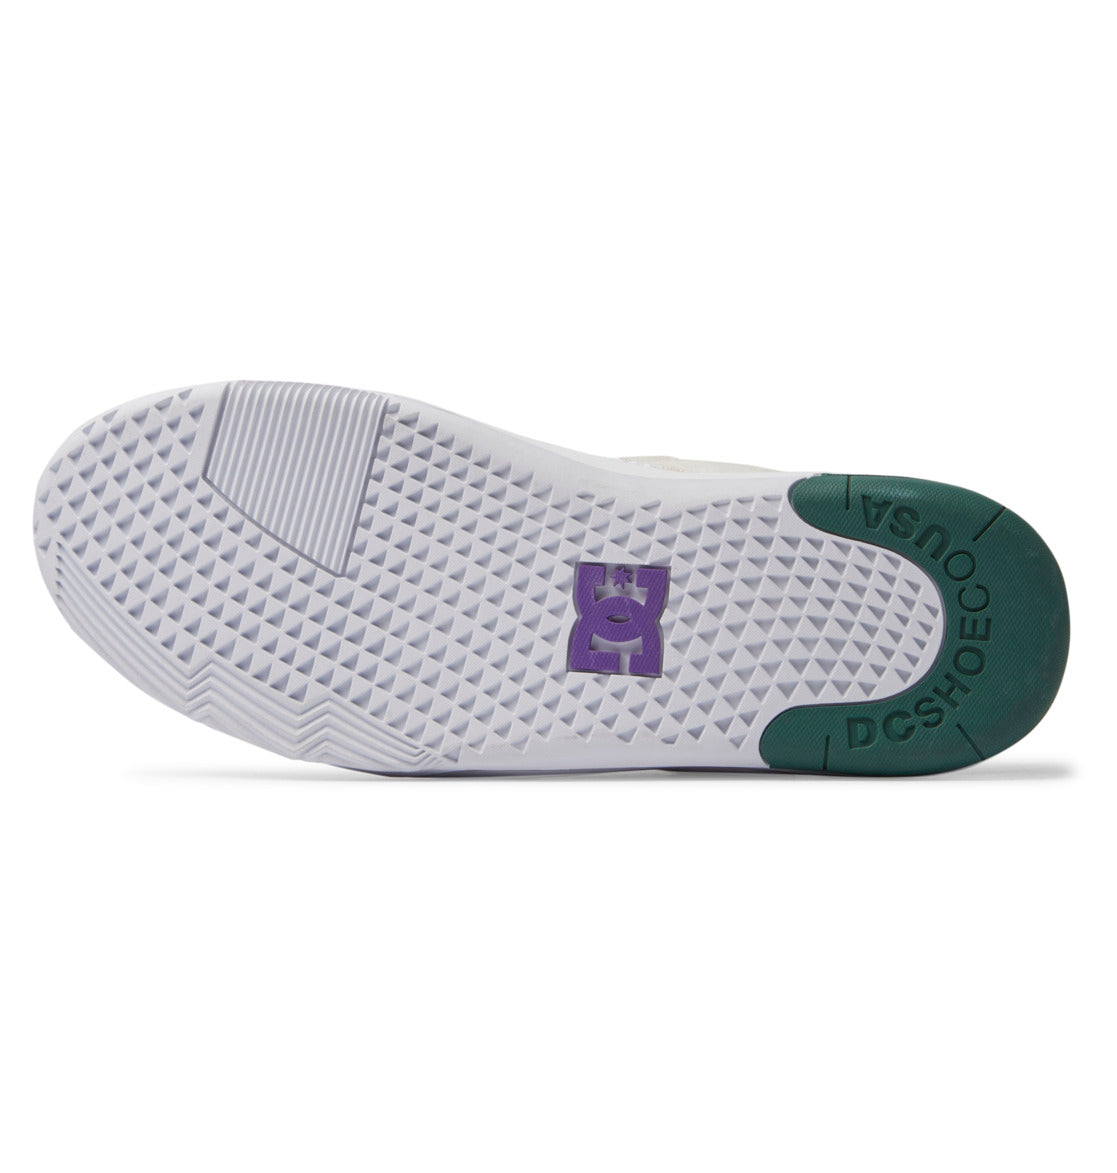 Men's Metric S X Ish Shoes - White/Purple